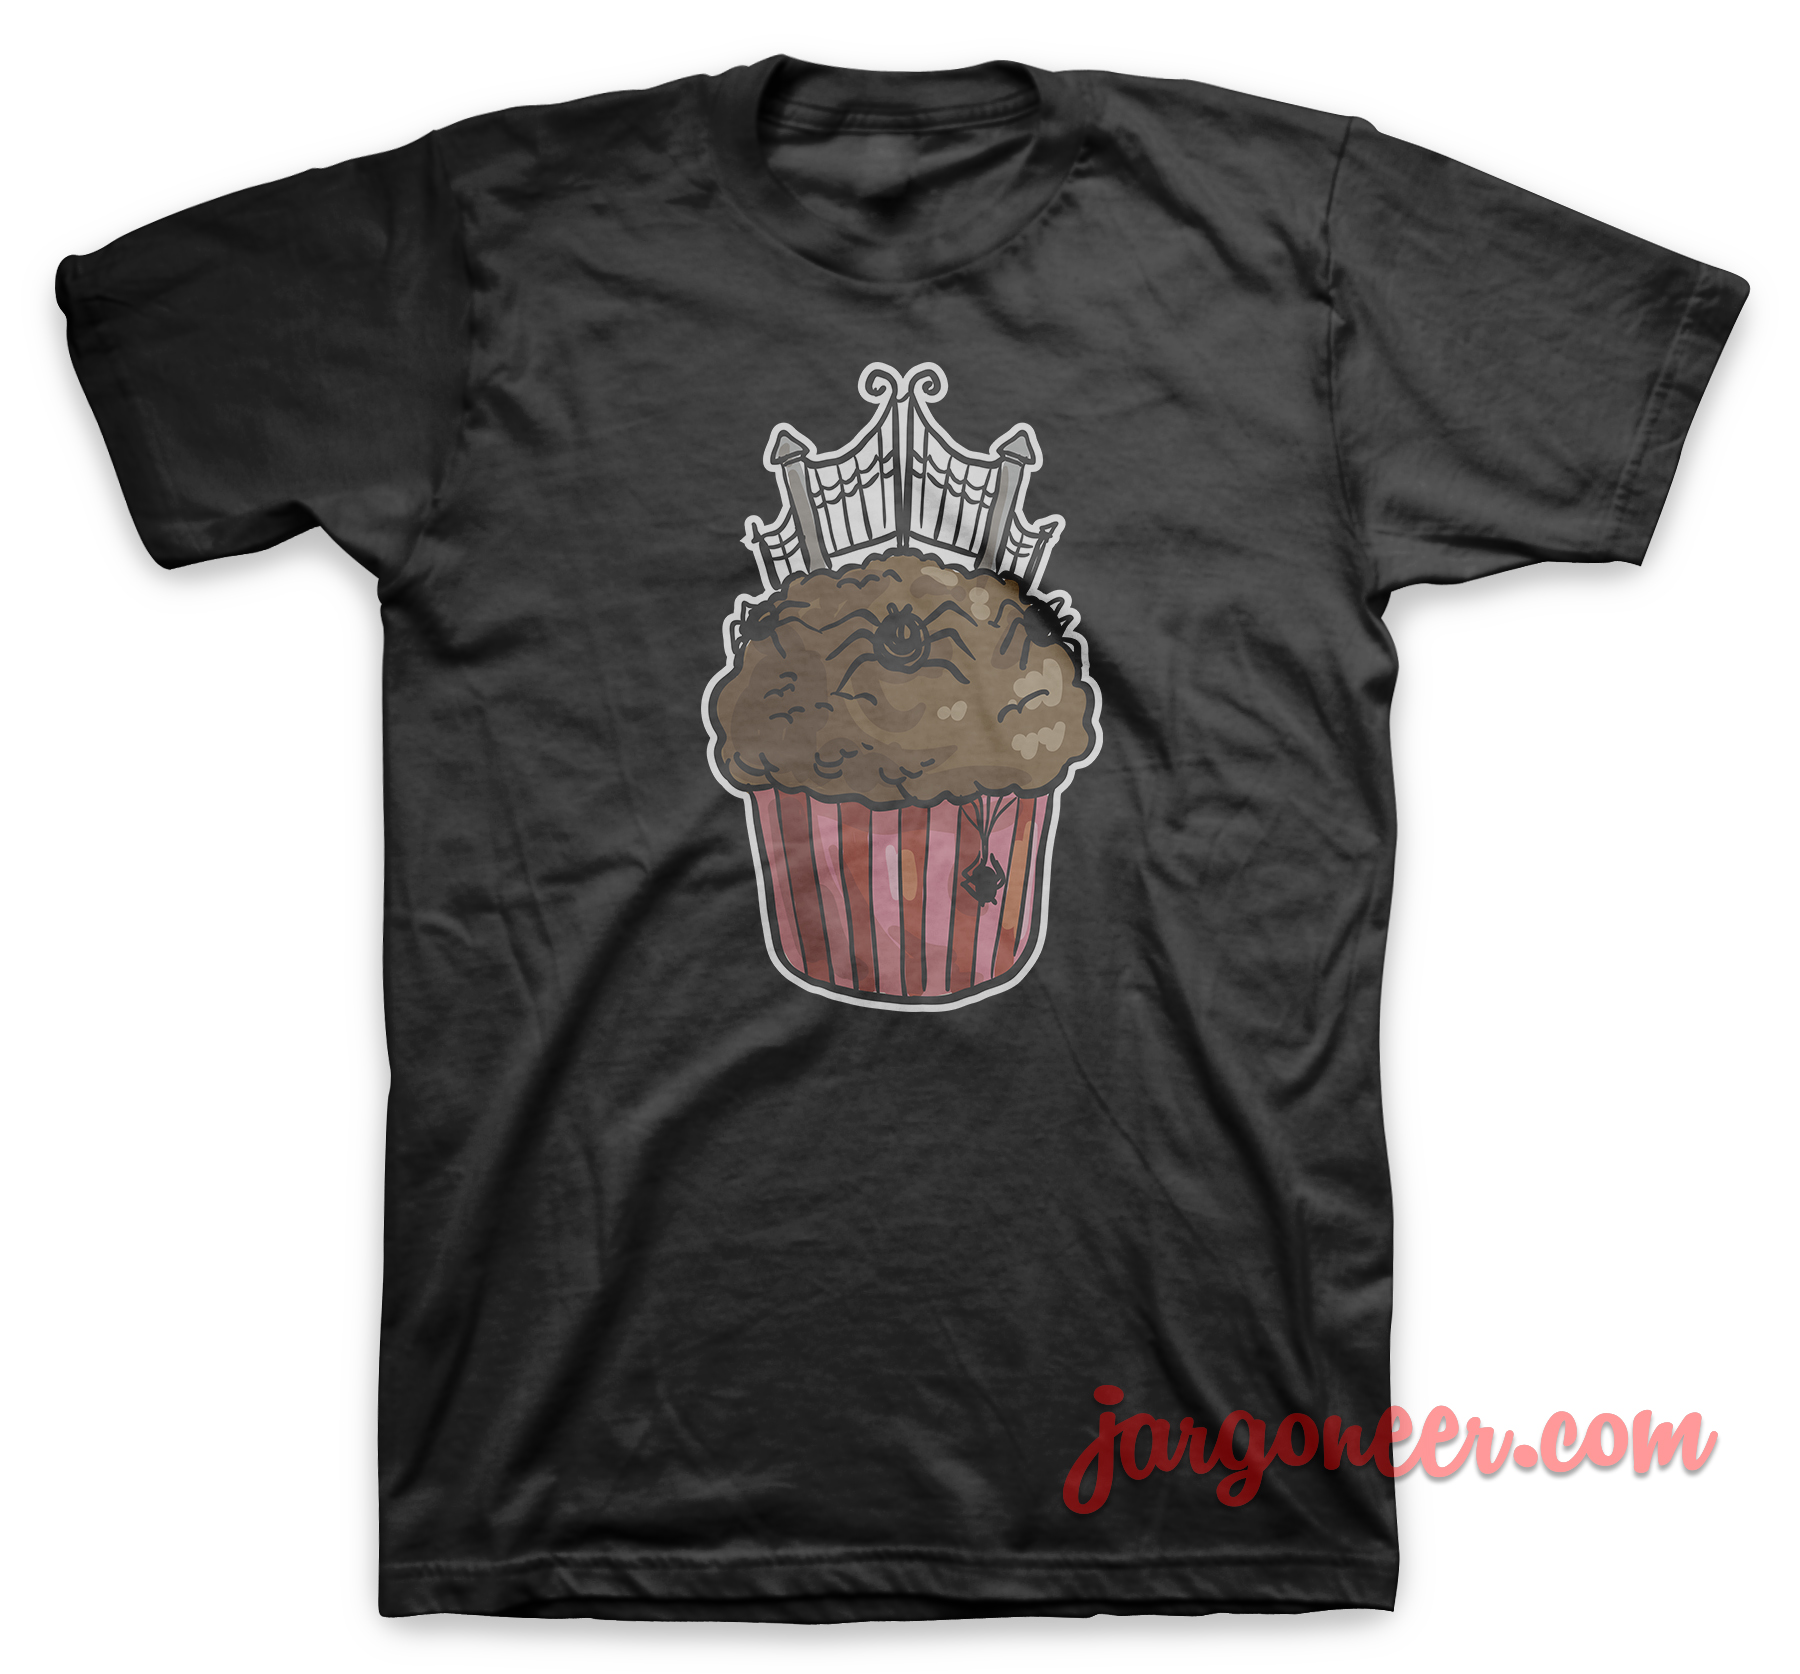 Cemetery Gate Cupcake Black T Shirt - Shop Unique Graphic Cool Shirt Designs